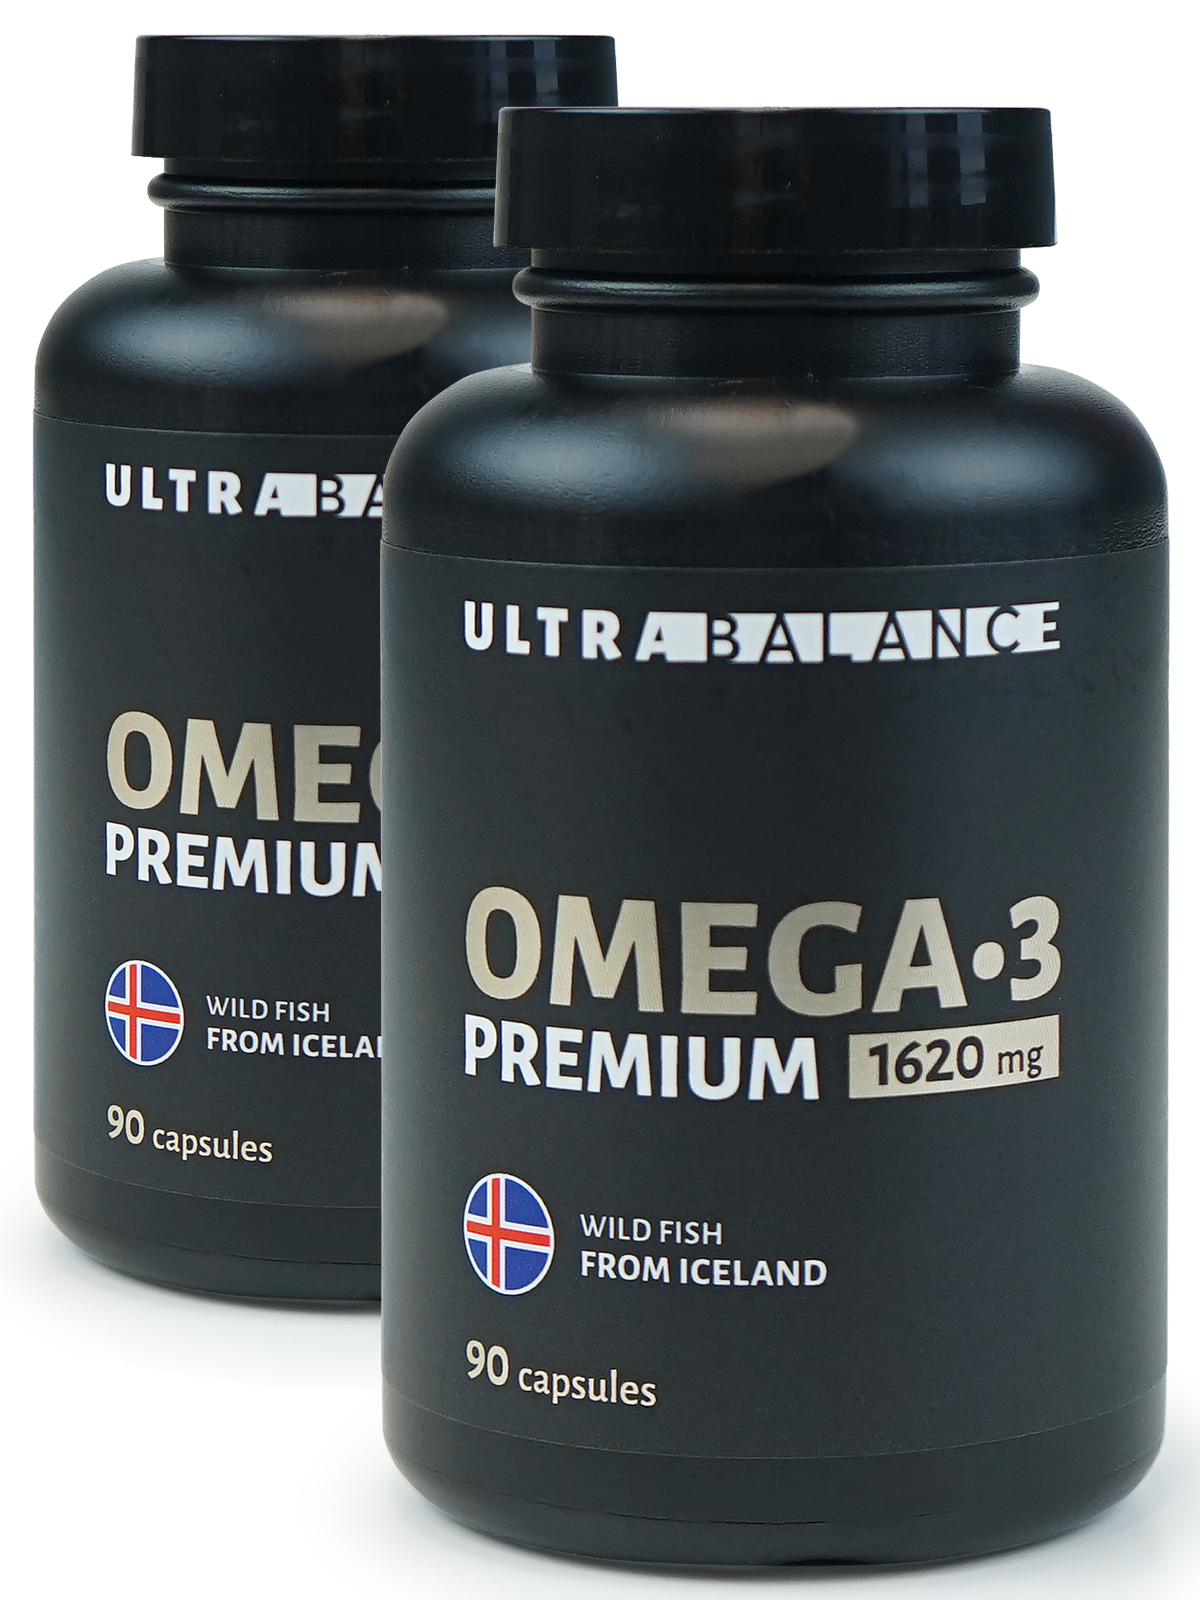 Купить Омега 3 UltraBalance Premium капсулы 1620 мг 90 шт.+90 шт.